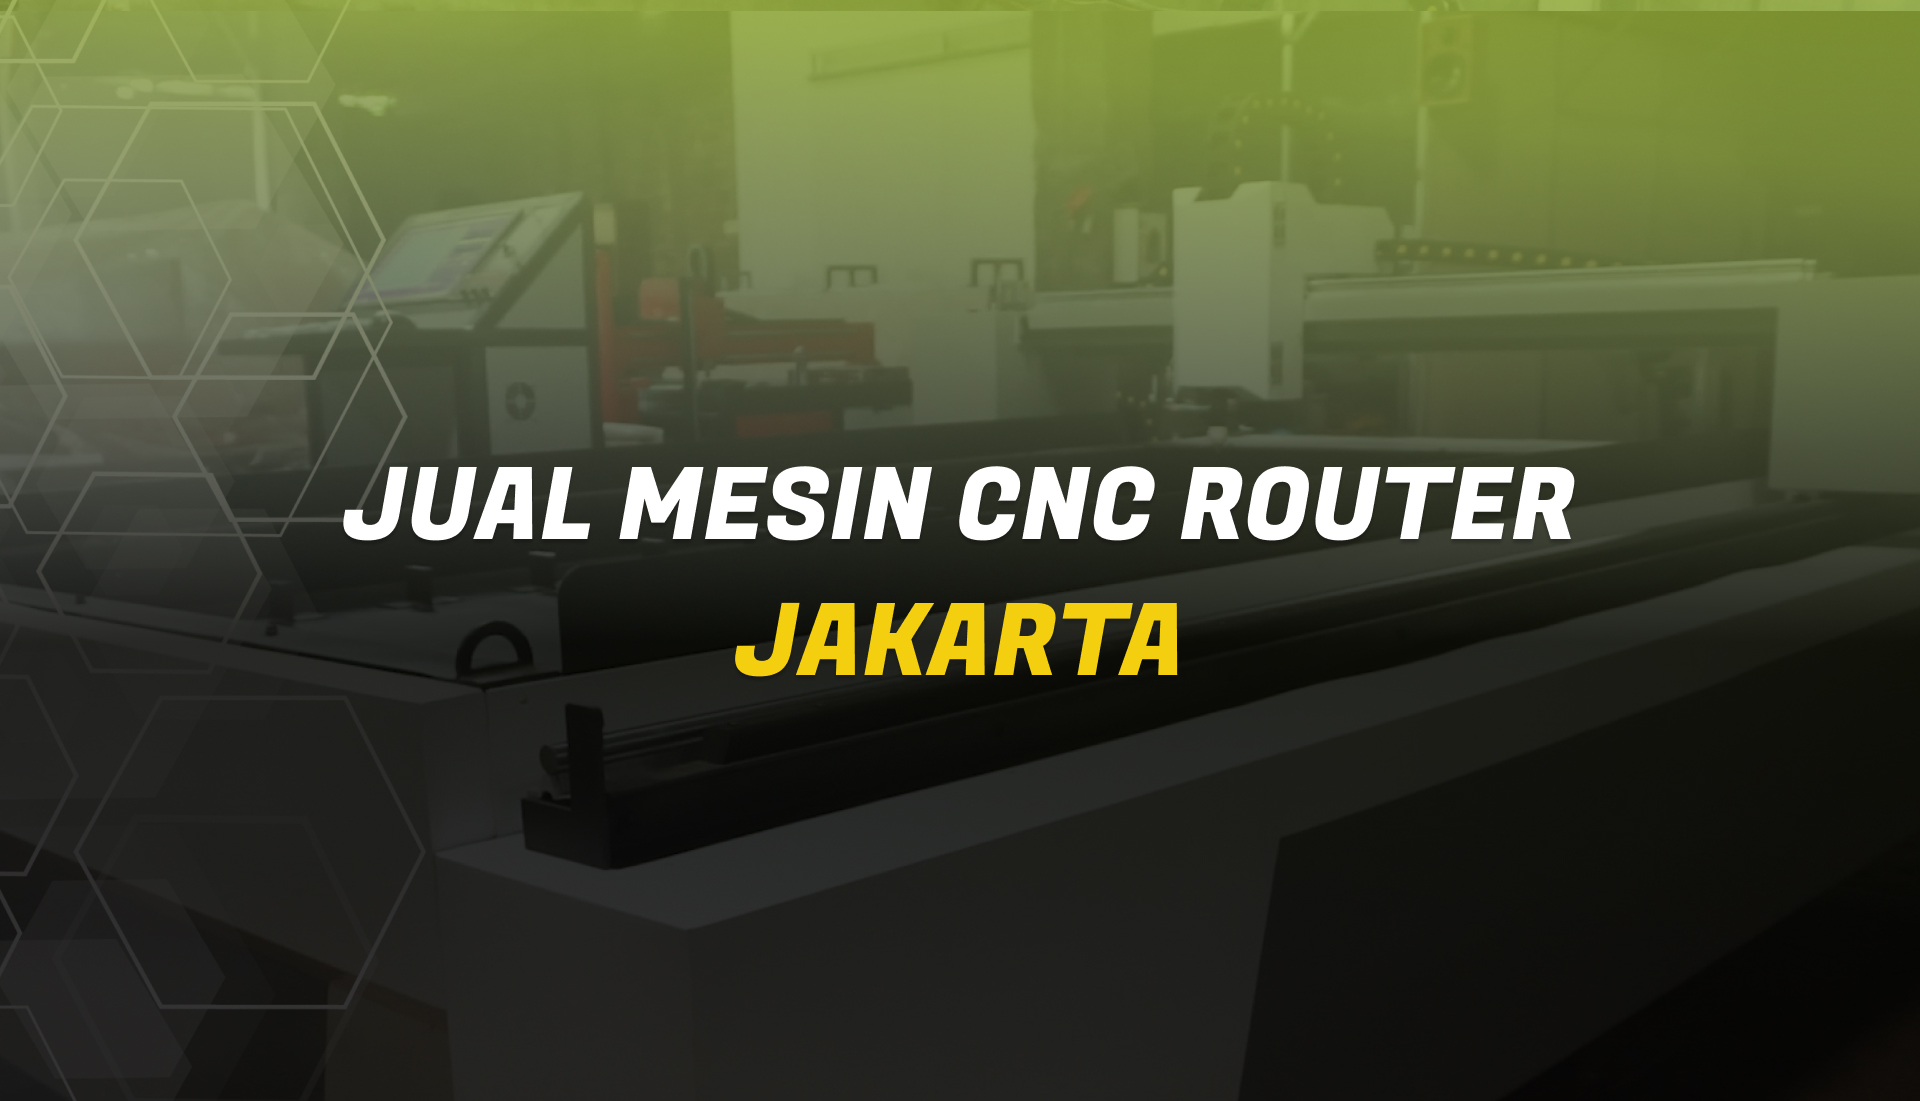 Jual Mesin CNC Router Jakarta Merk INSECO Berkualitas